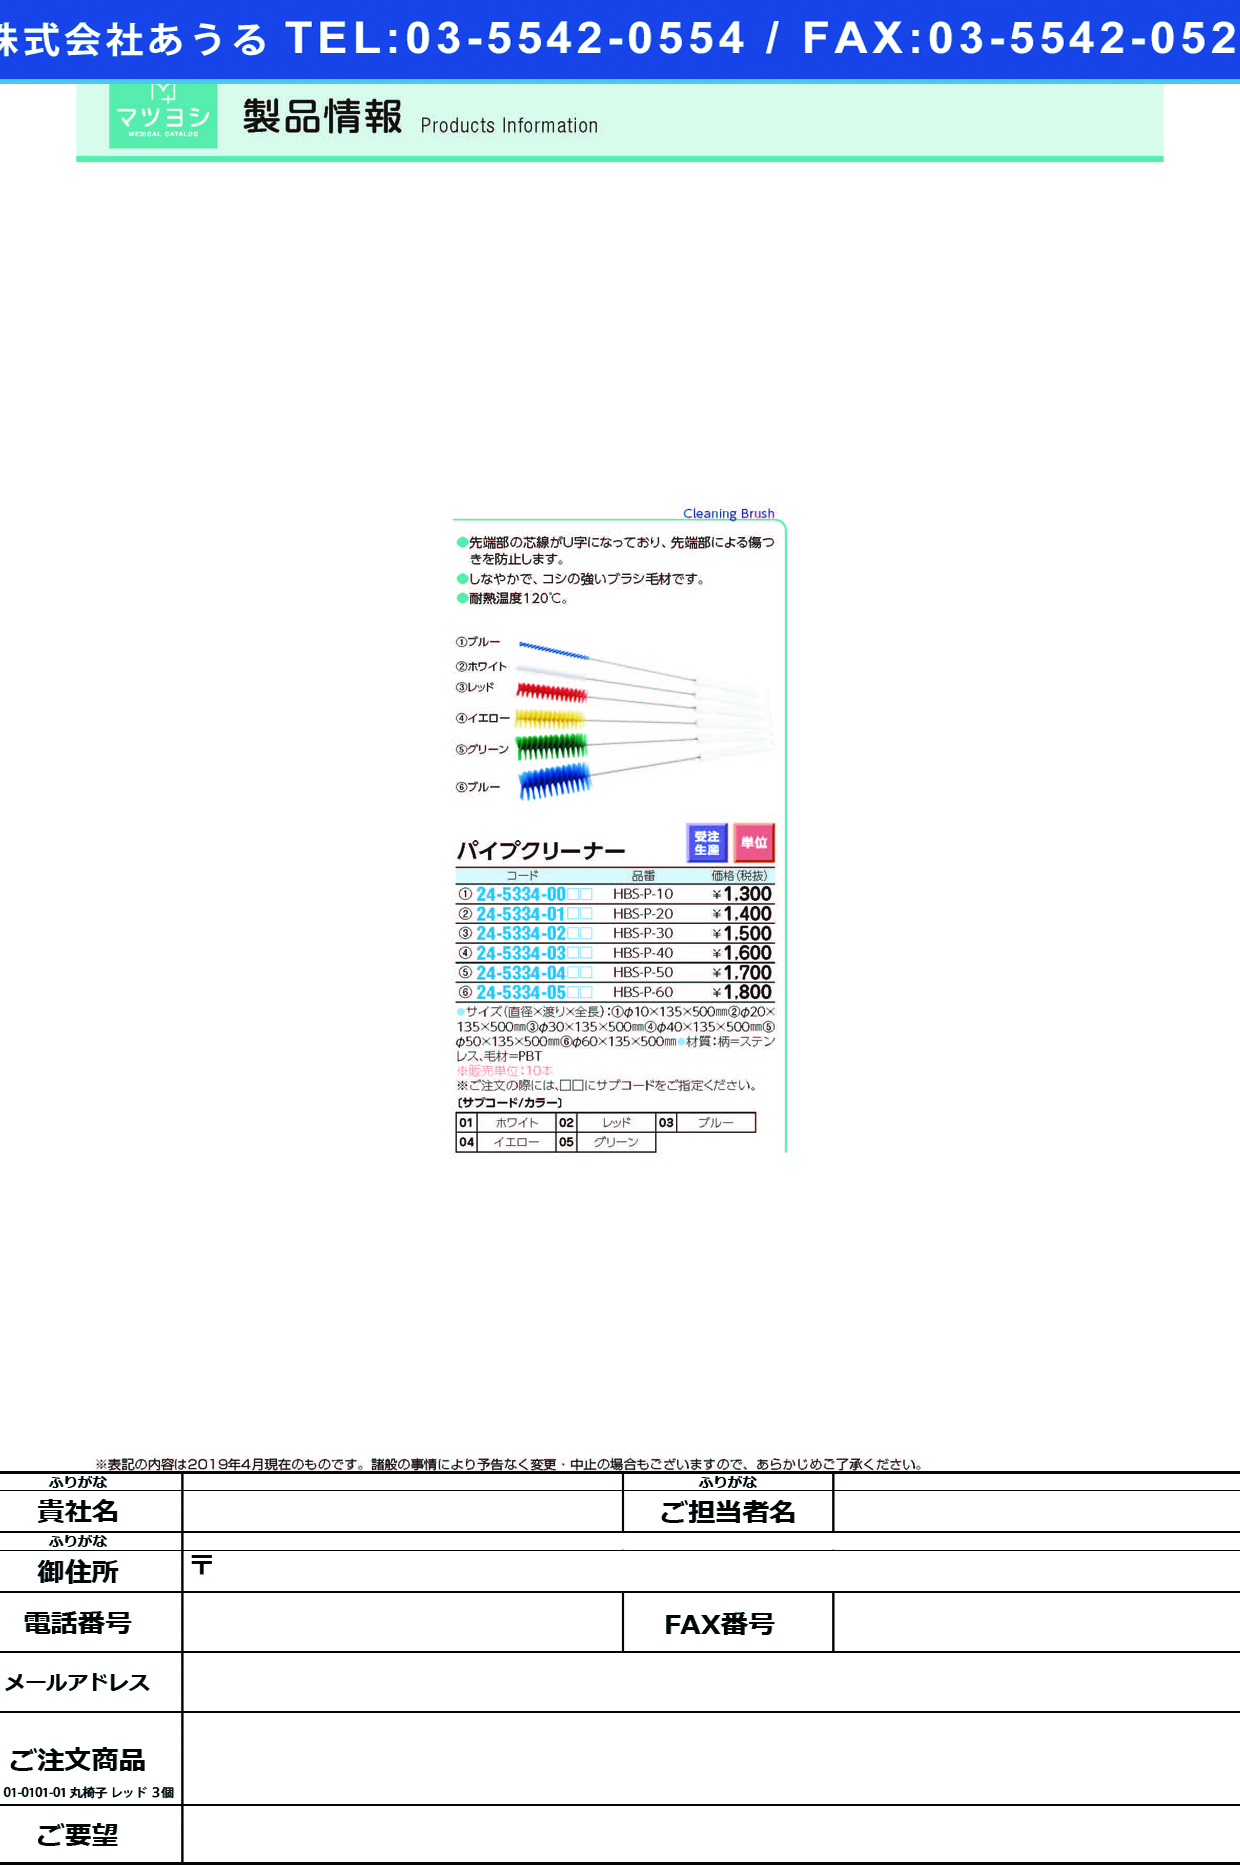 (24-5334-05)パイプクリーナー HBS-P-60 ﾊﾟｲﾌﾟｸﾘｰﾅｰ イエロー【10本単位】【2019年カタログ商品】